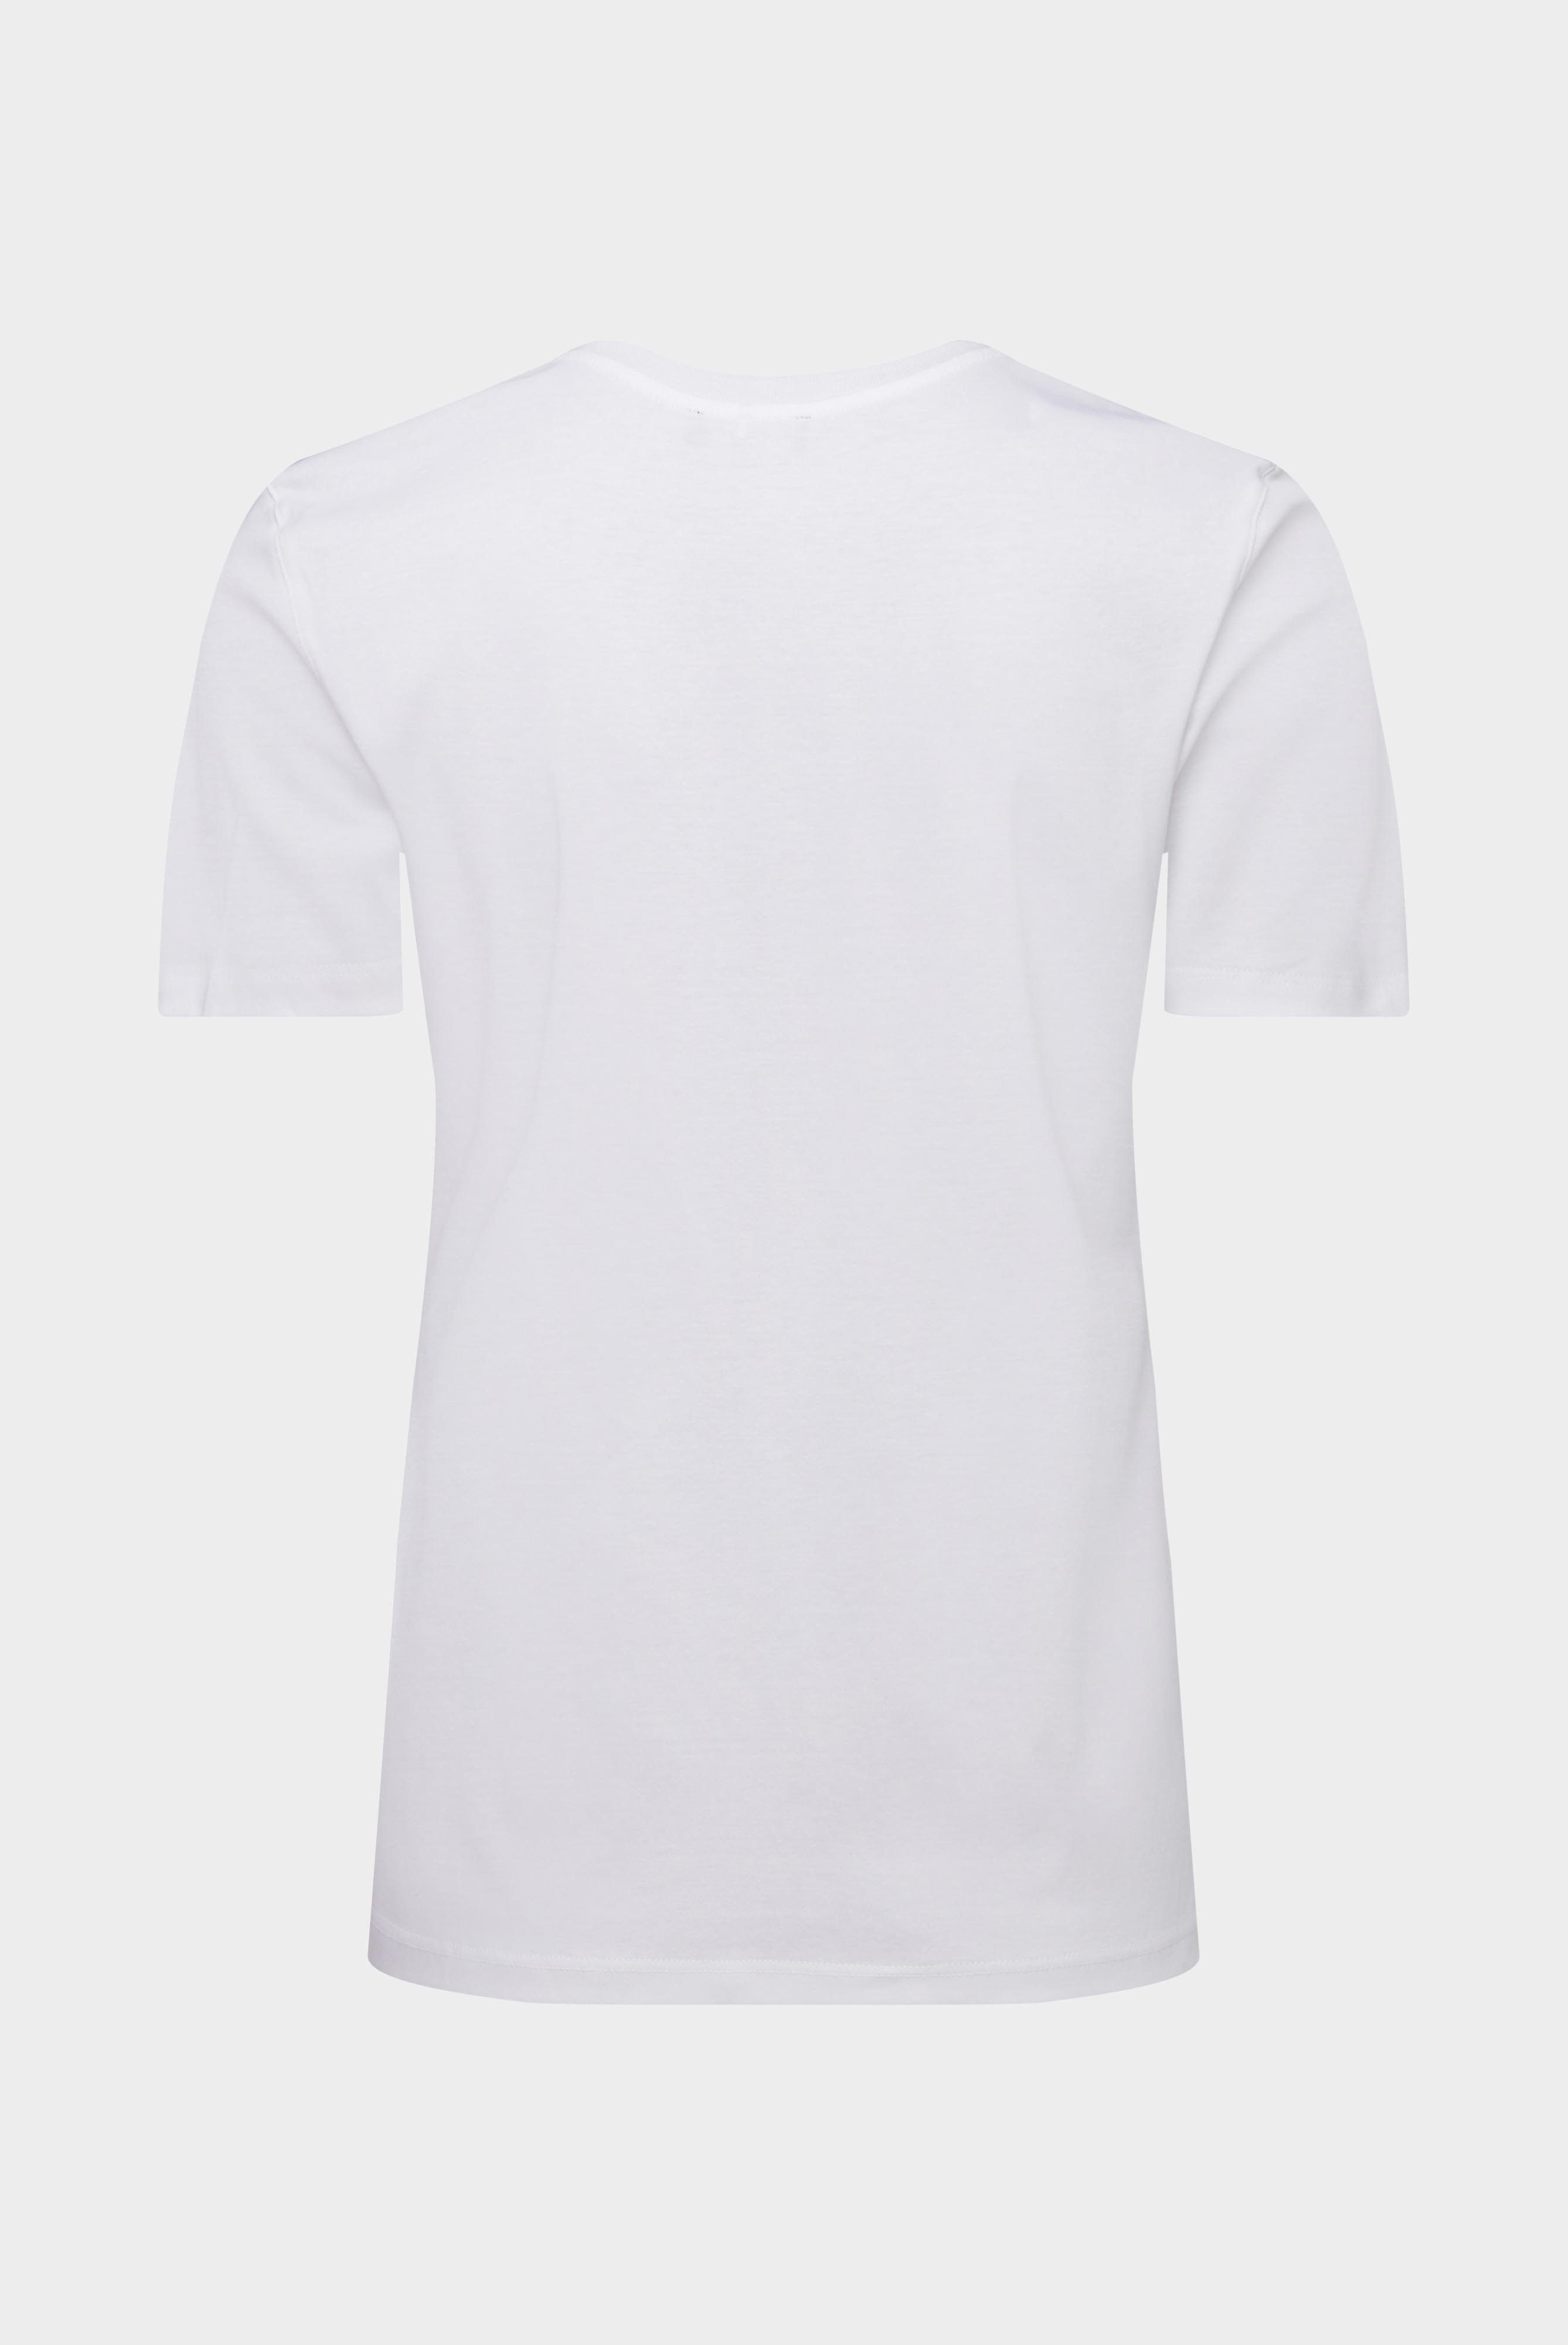 Tops & T-Shirts+Jersey T-Shirt+05.6384.18.180031.000.40